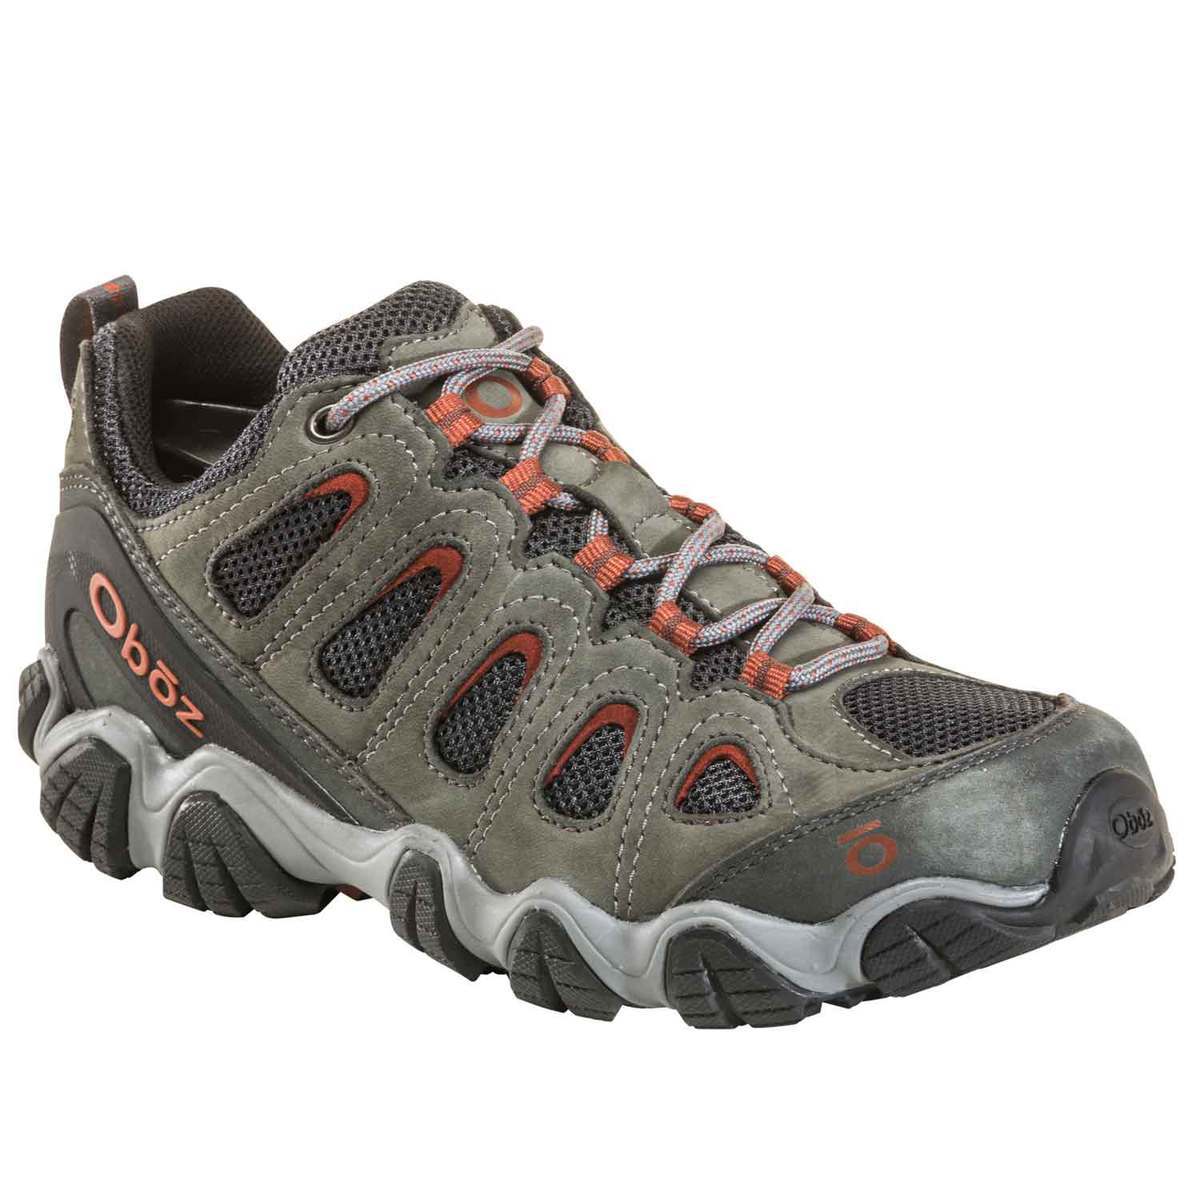 Oboz Men's Sawtooth II Low Hiking Shoes - Dark Shadow - Size 10 - Dark Shadow 10 | Sportsman's 